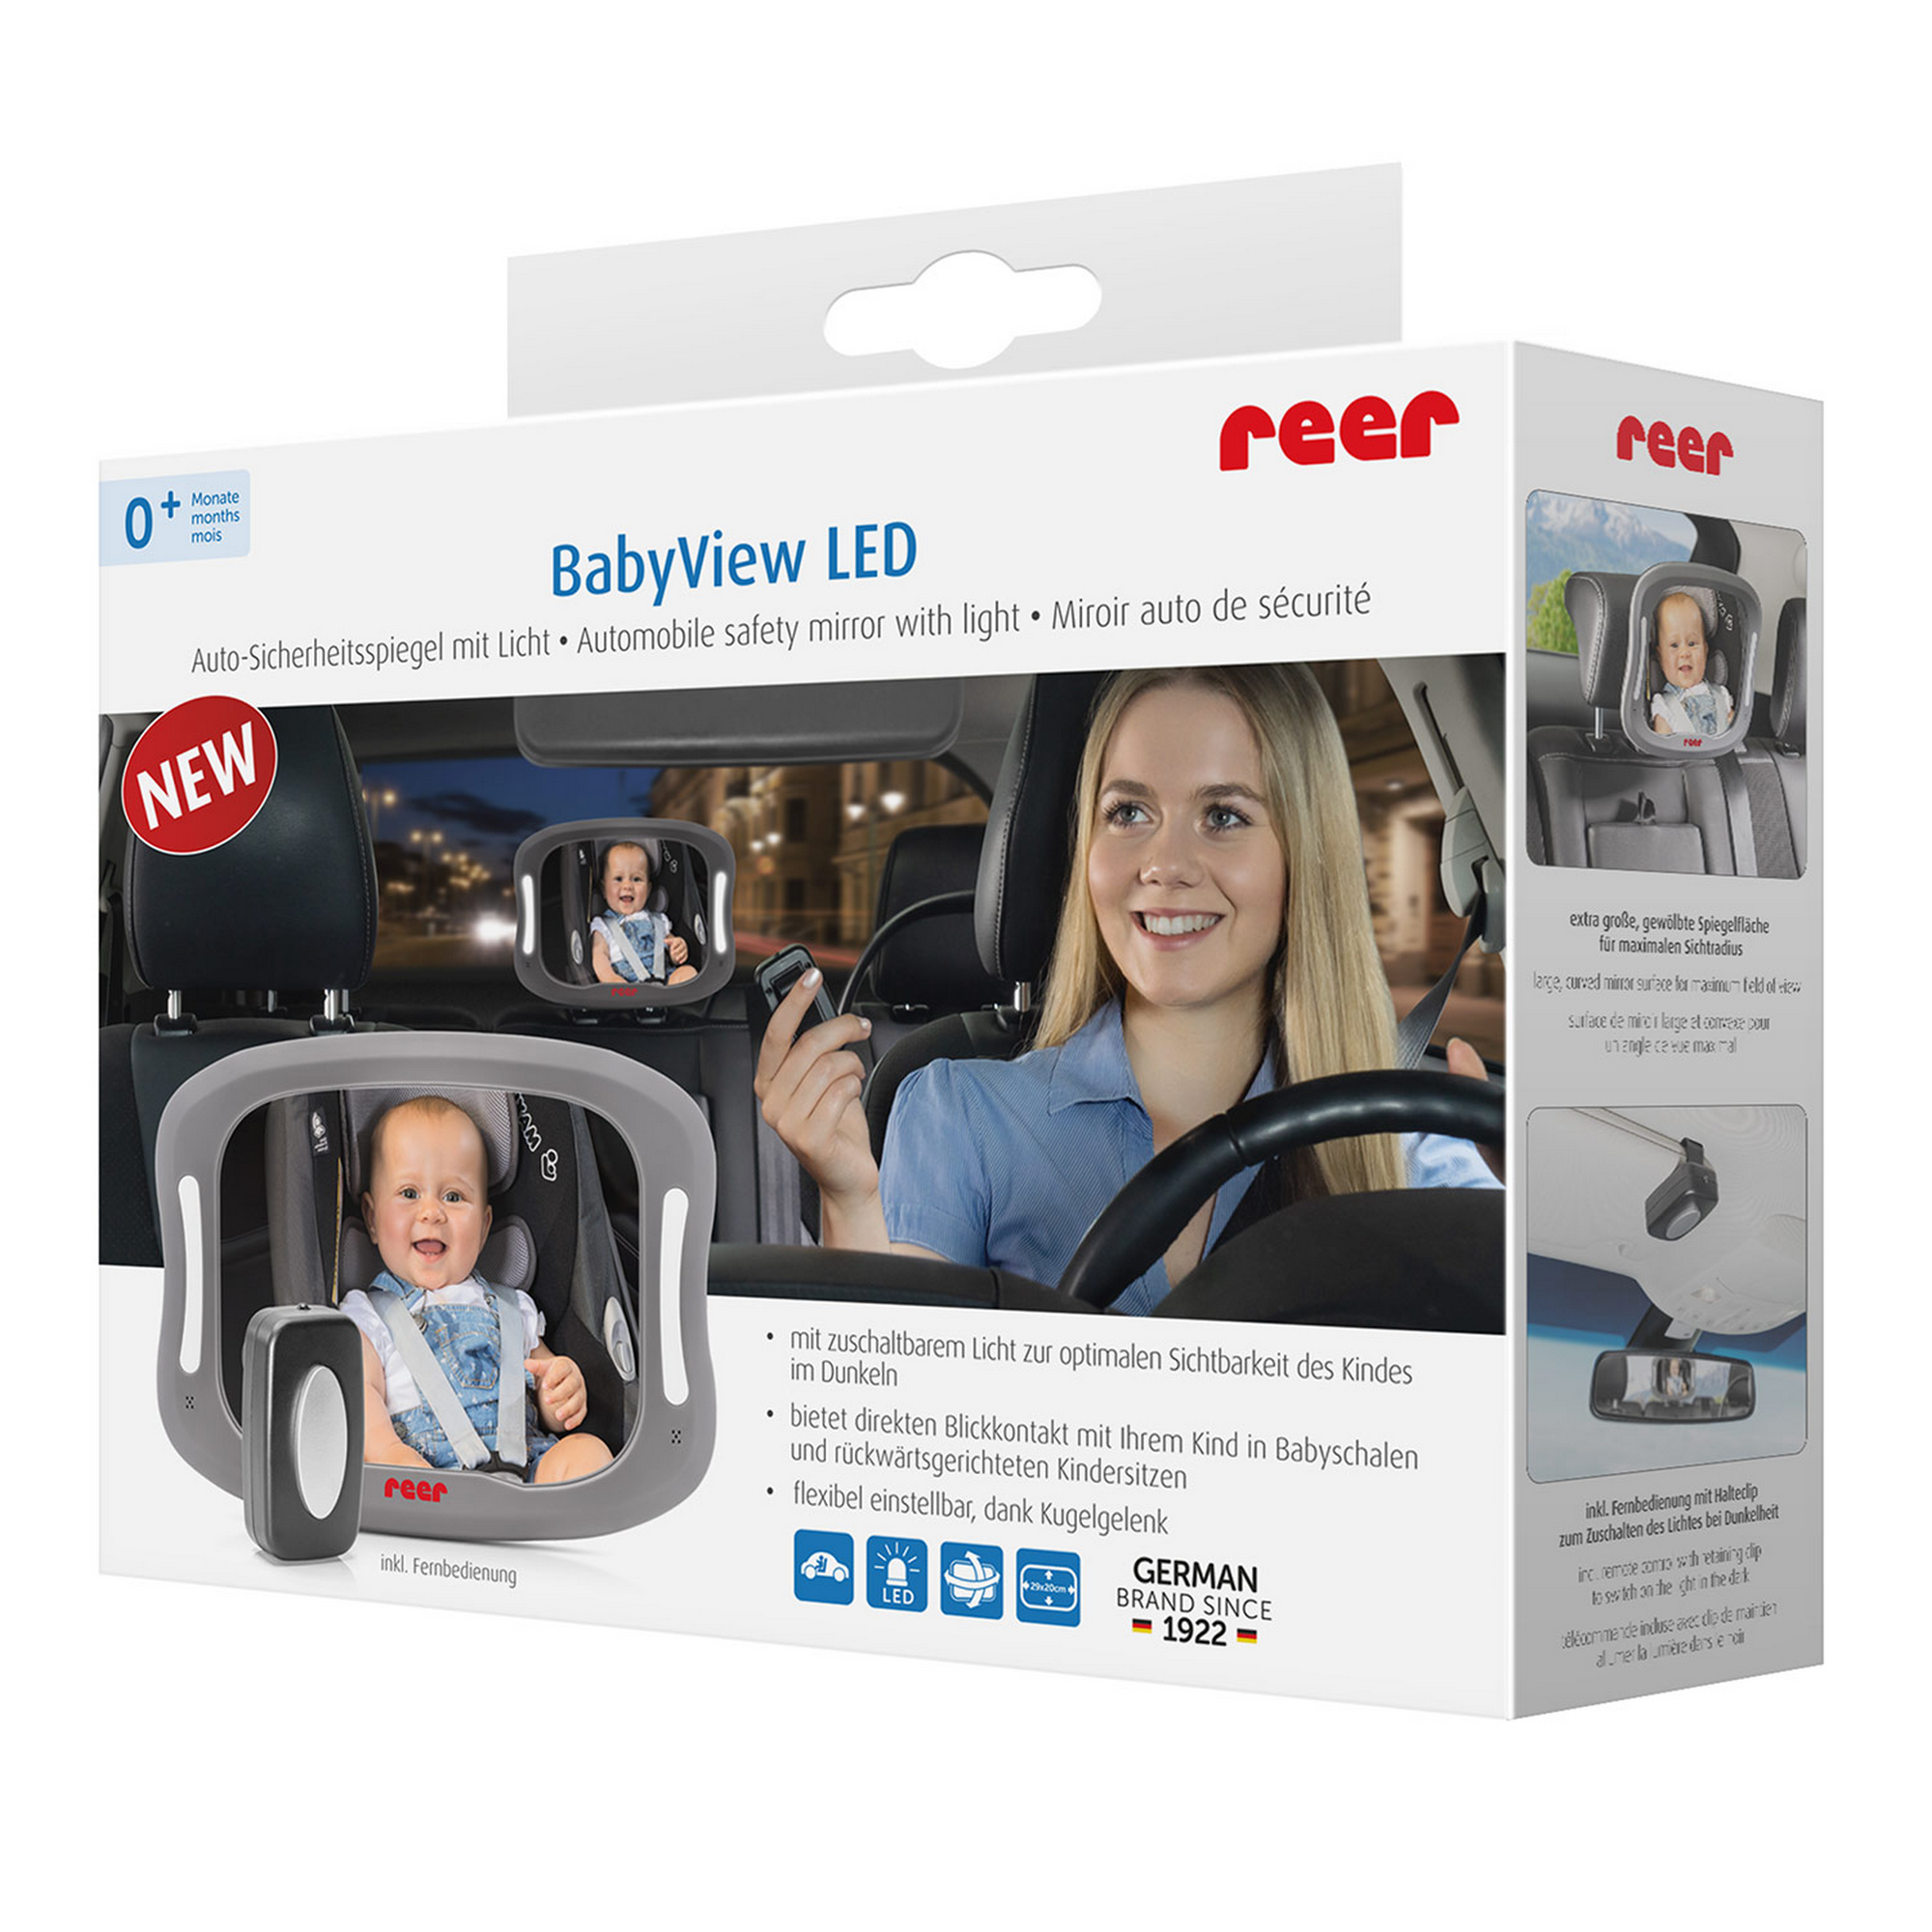 LED-Auto-Sicherheitspiegel 'Baby View